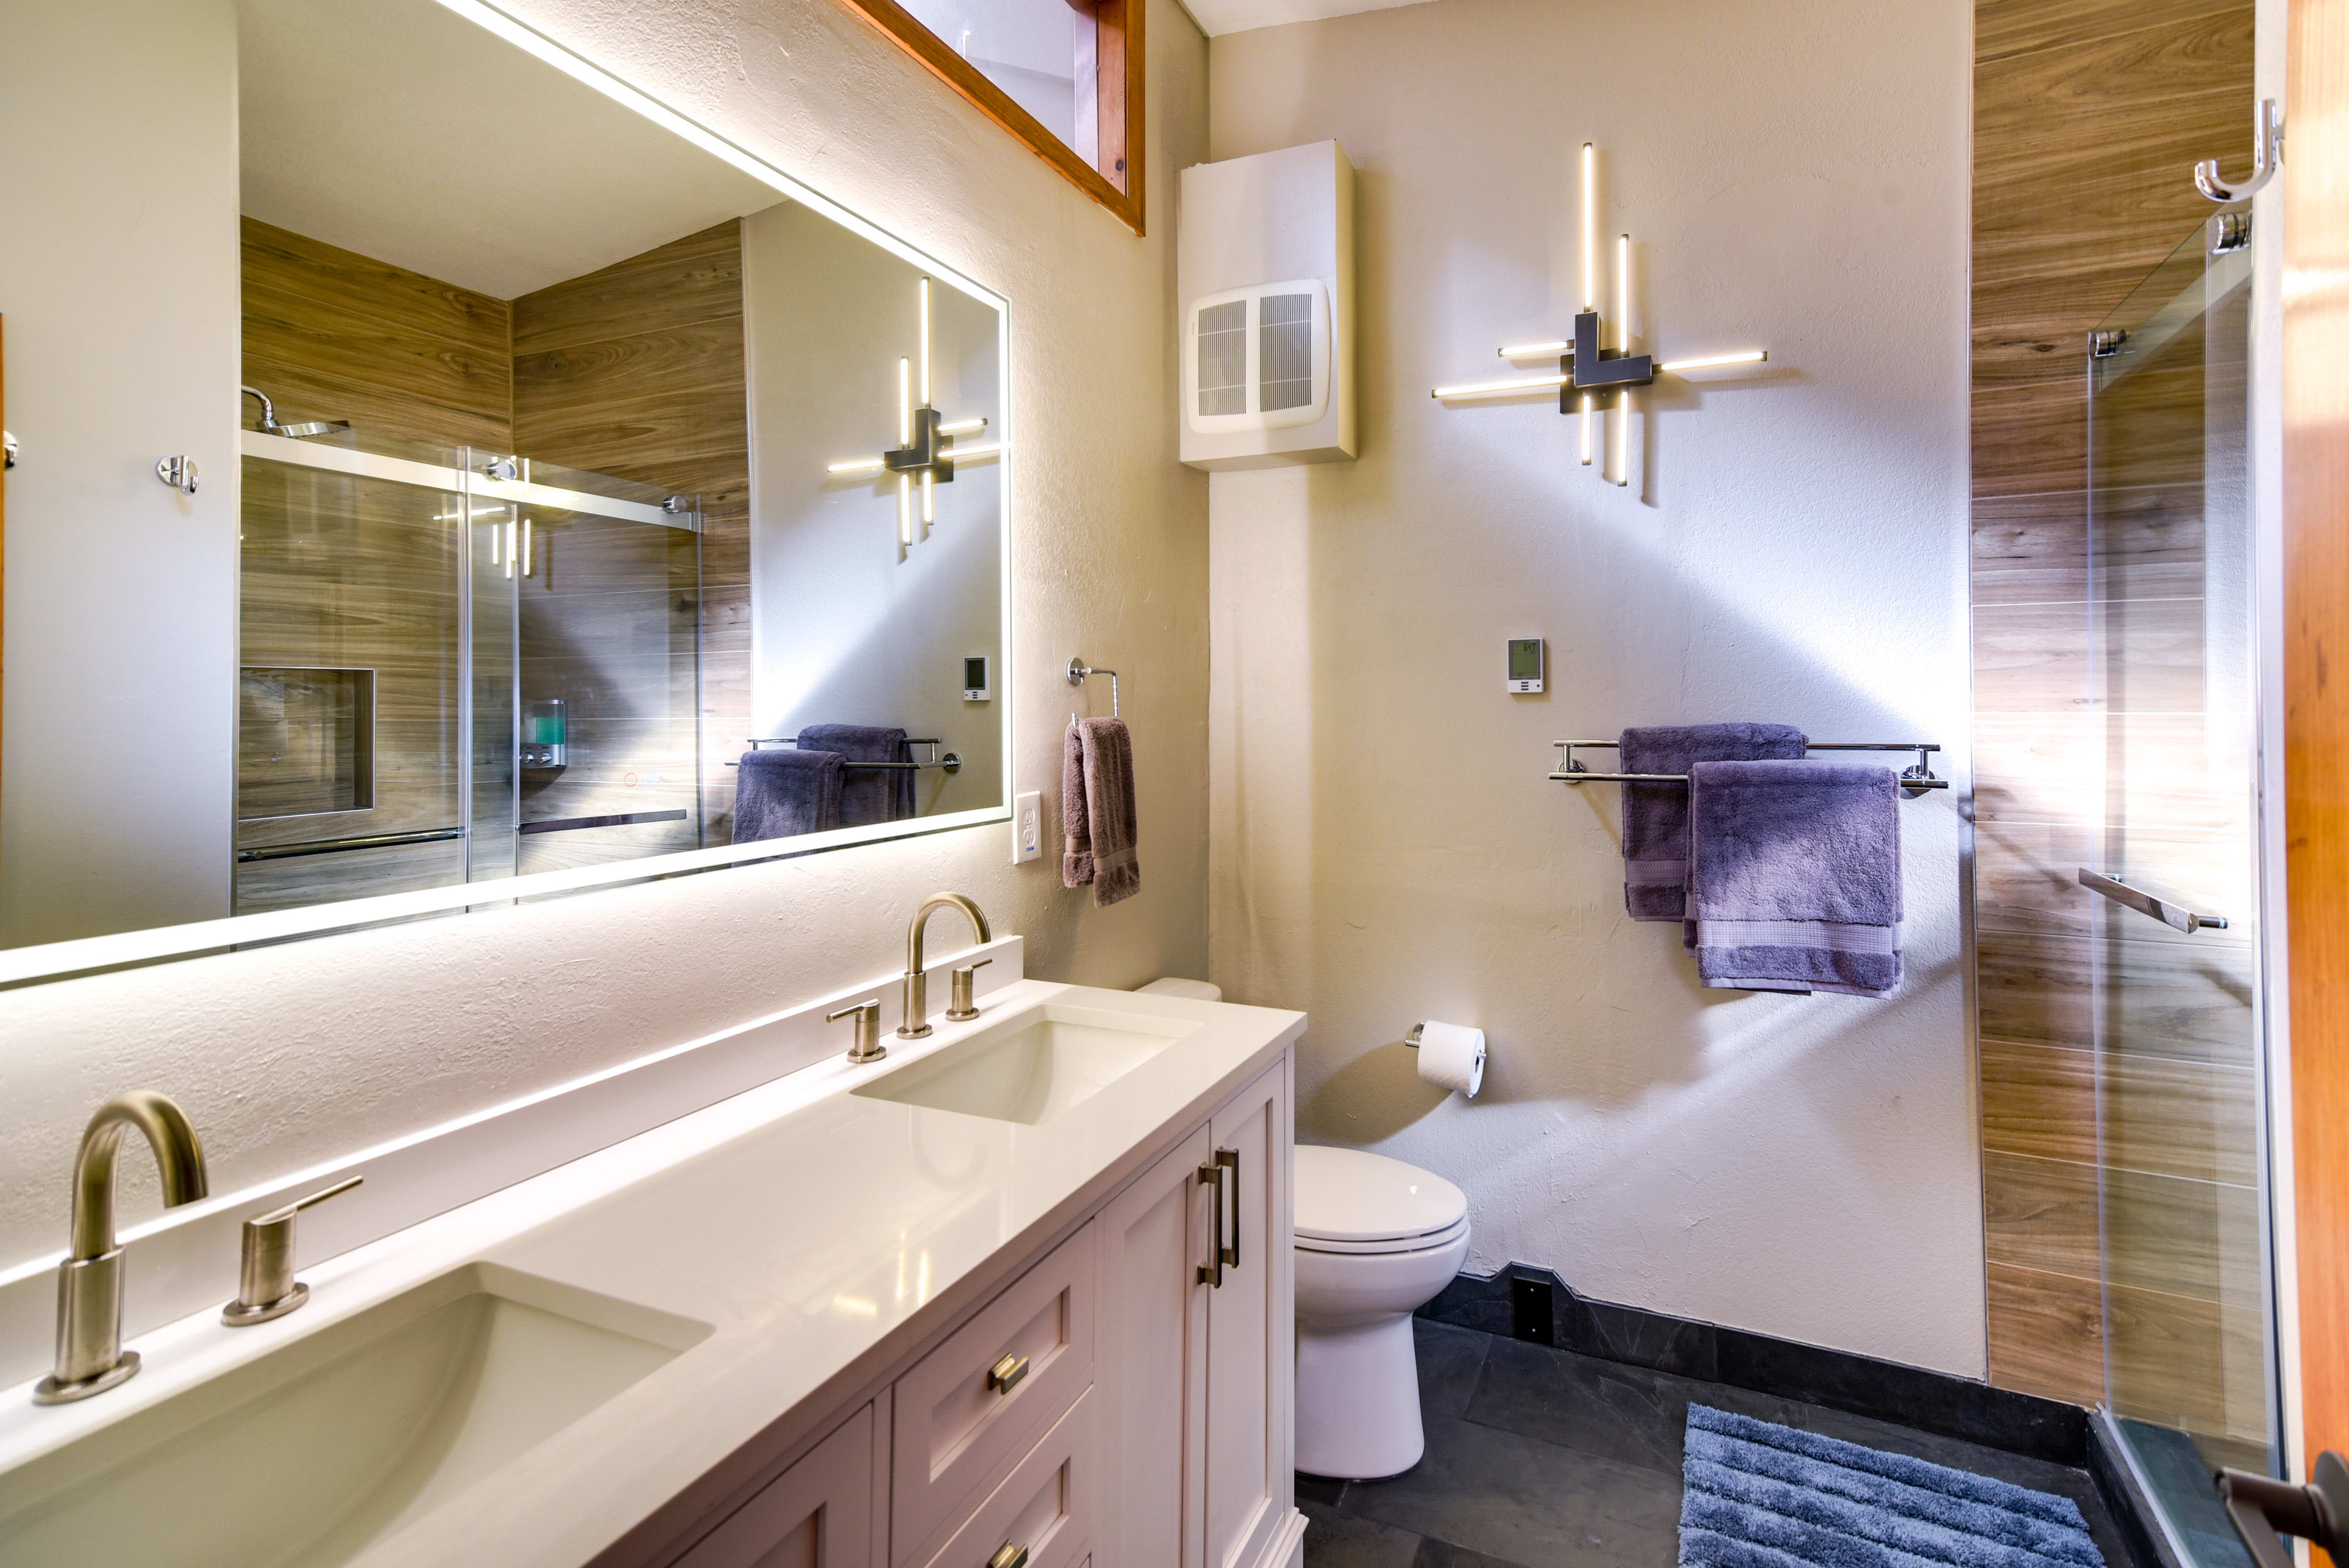 En-Suite Bathroom | Complimentary Toiletries | Hair Dryer | Towels